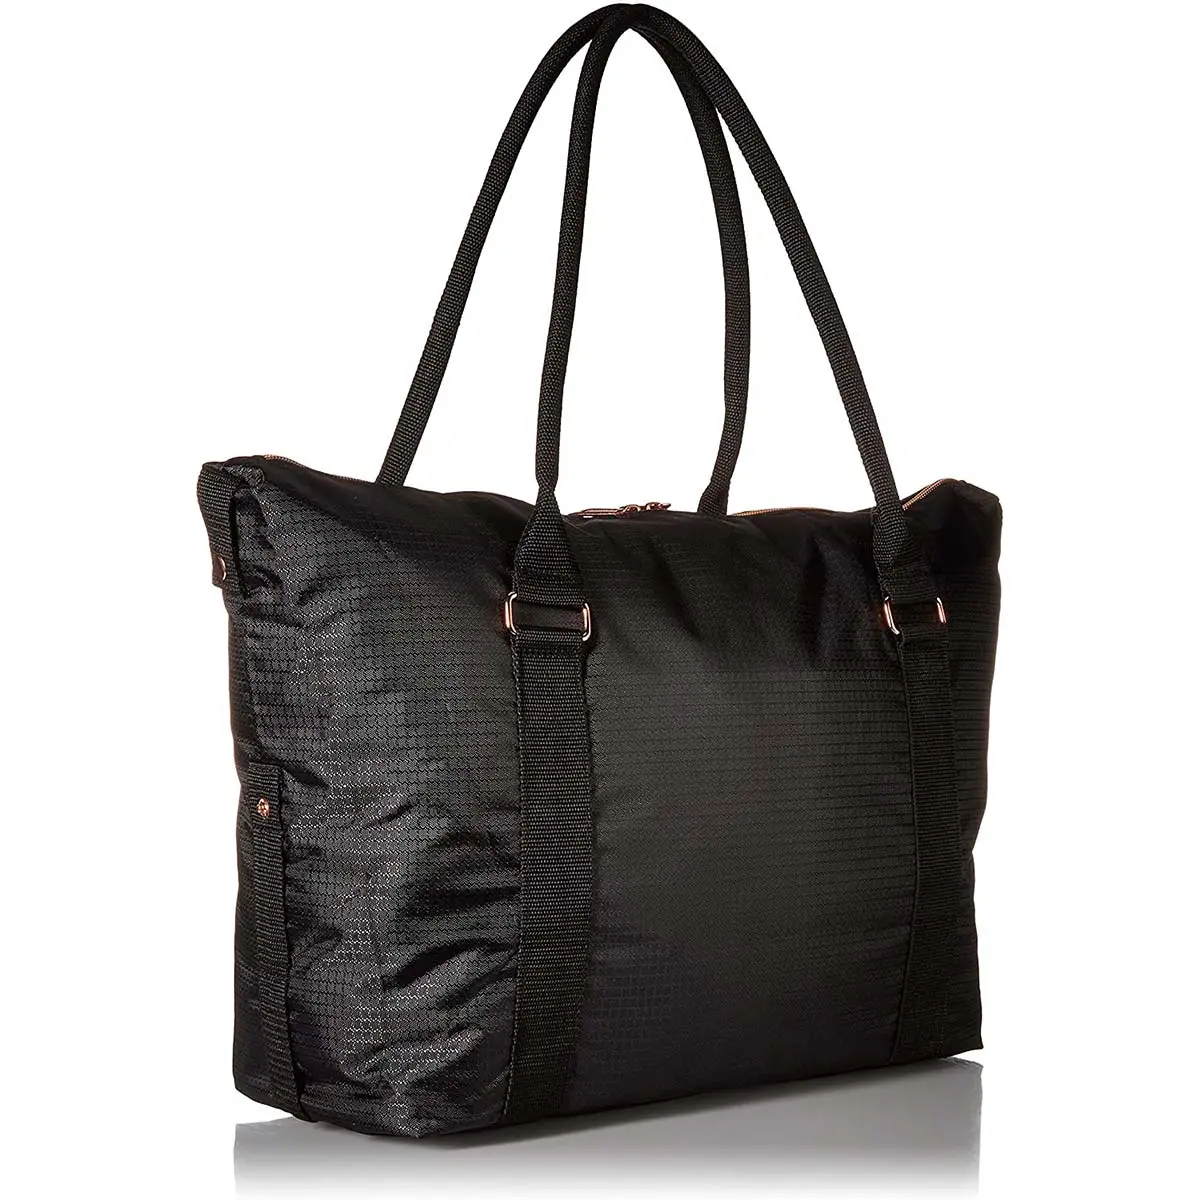 Frauen Cordura Mode Einkaufstasche Niedriger Preis Elegantes Design tragbare Frauen Handtasche Großhandel anpassen Tasche Lieferant